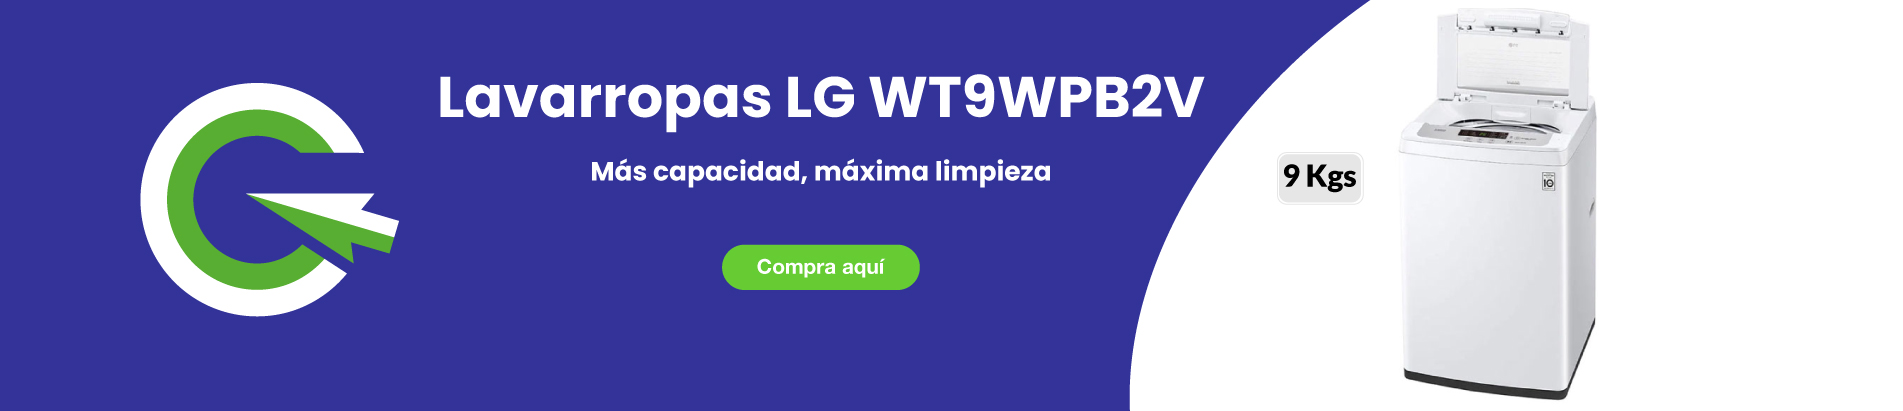 lavarropas-lg-9-kgs-wt9wpb2v